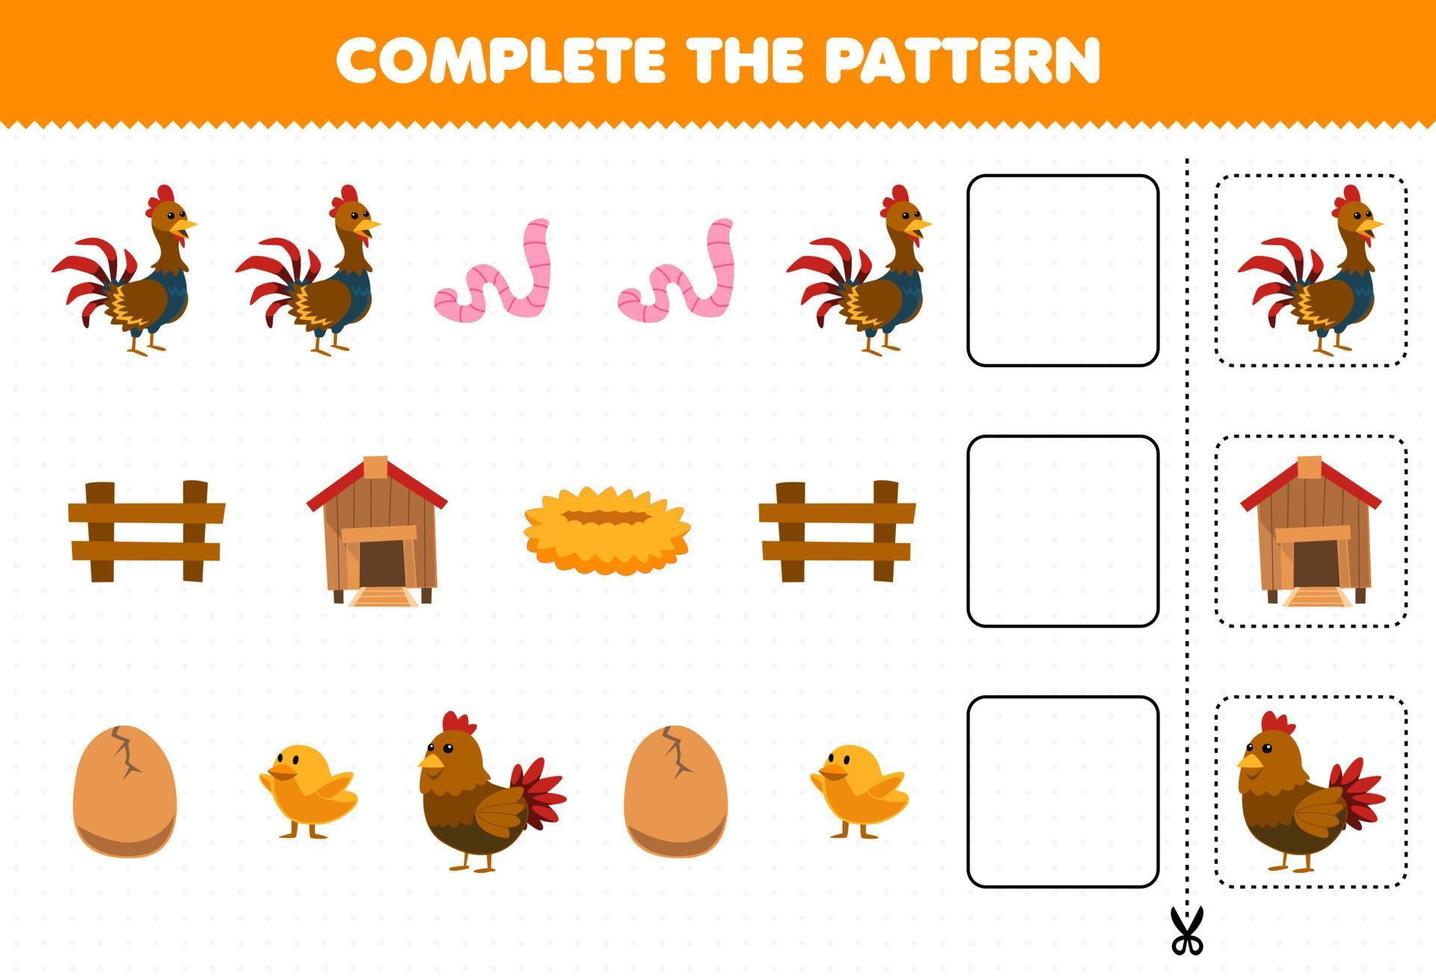 jeu éducatif pour les enfants compléter le modèle pensée logique trouver la régularité et continuer la tâche de rangée avec dessin animé poulet poule poussin coq ver coop nid clôture vecteur